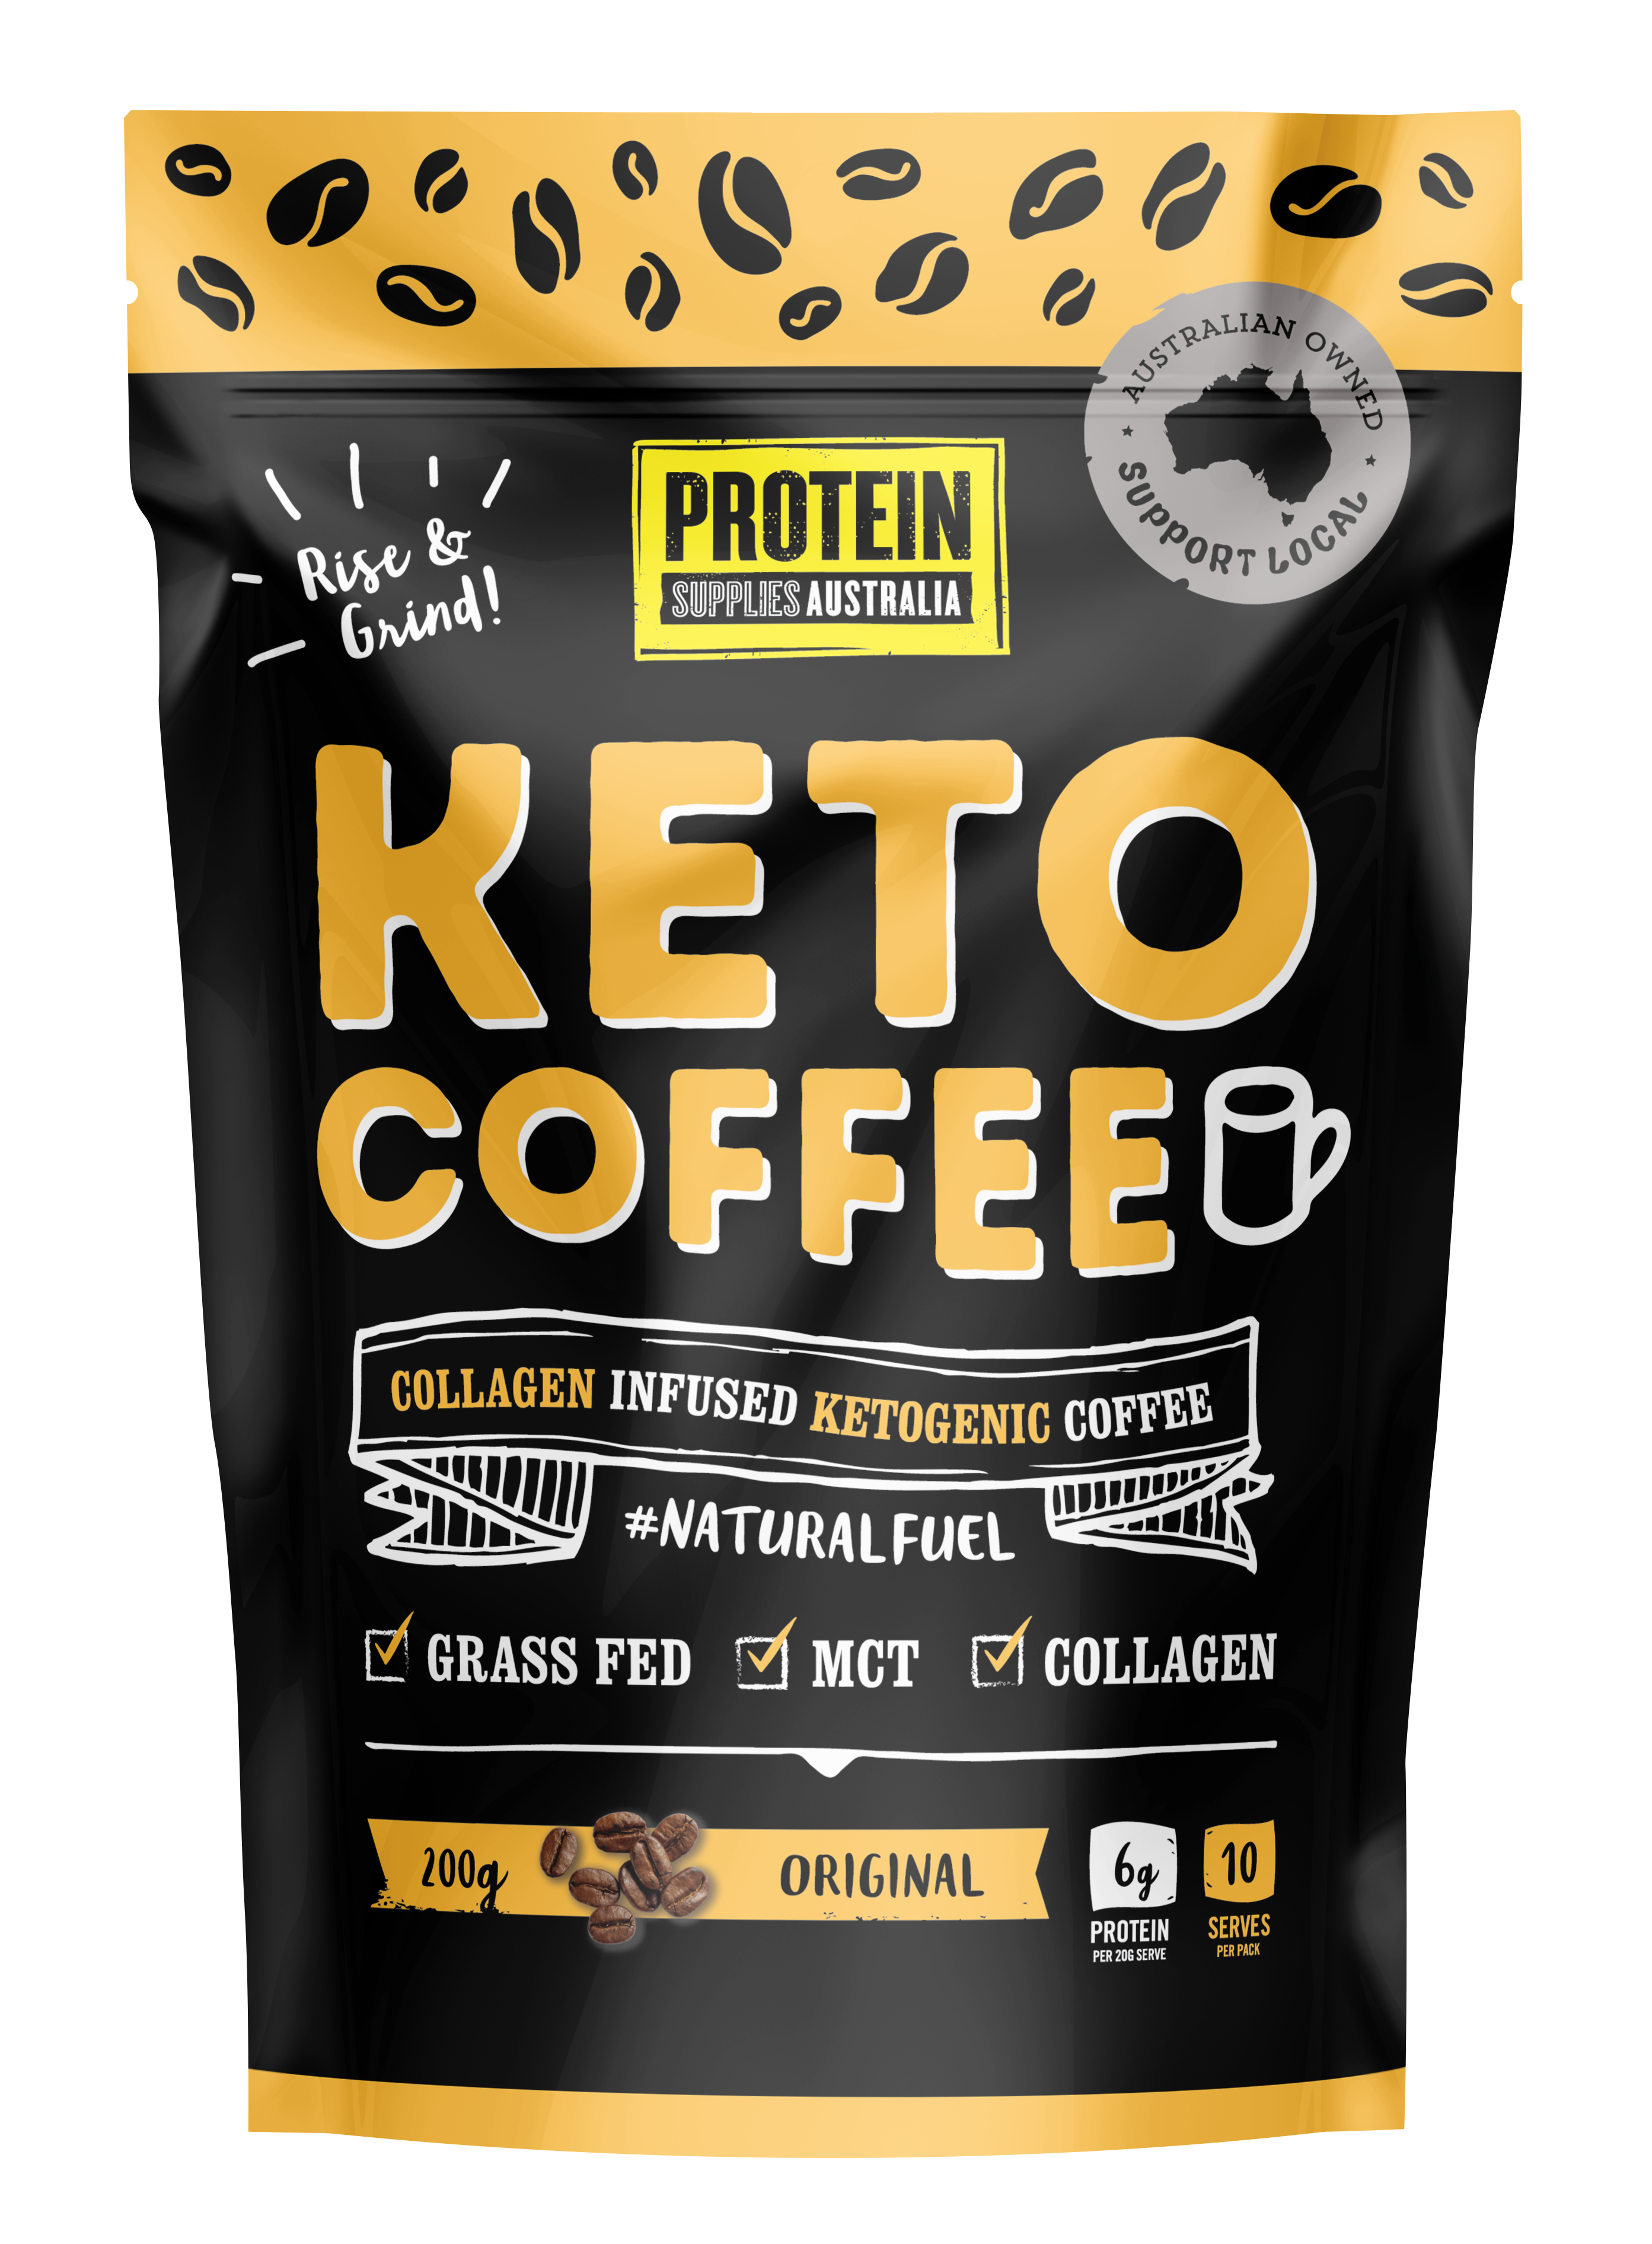 Keto Coffee - Protein Supplies Australia